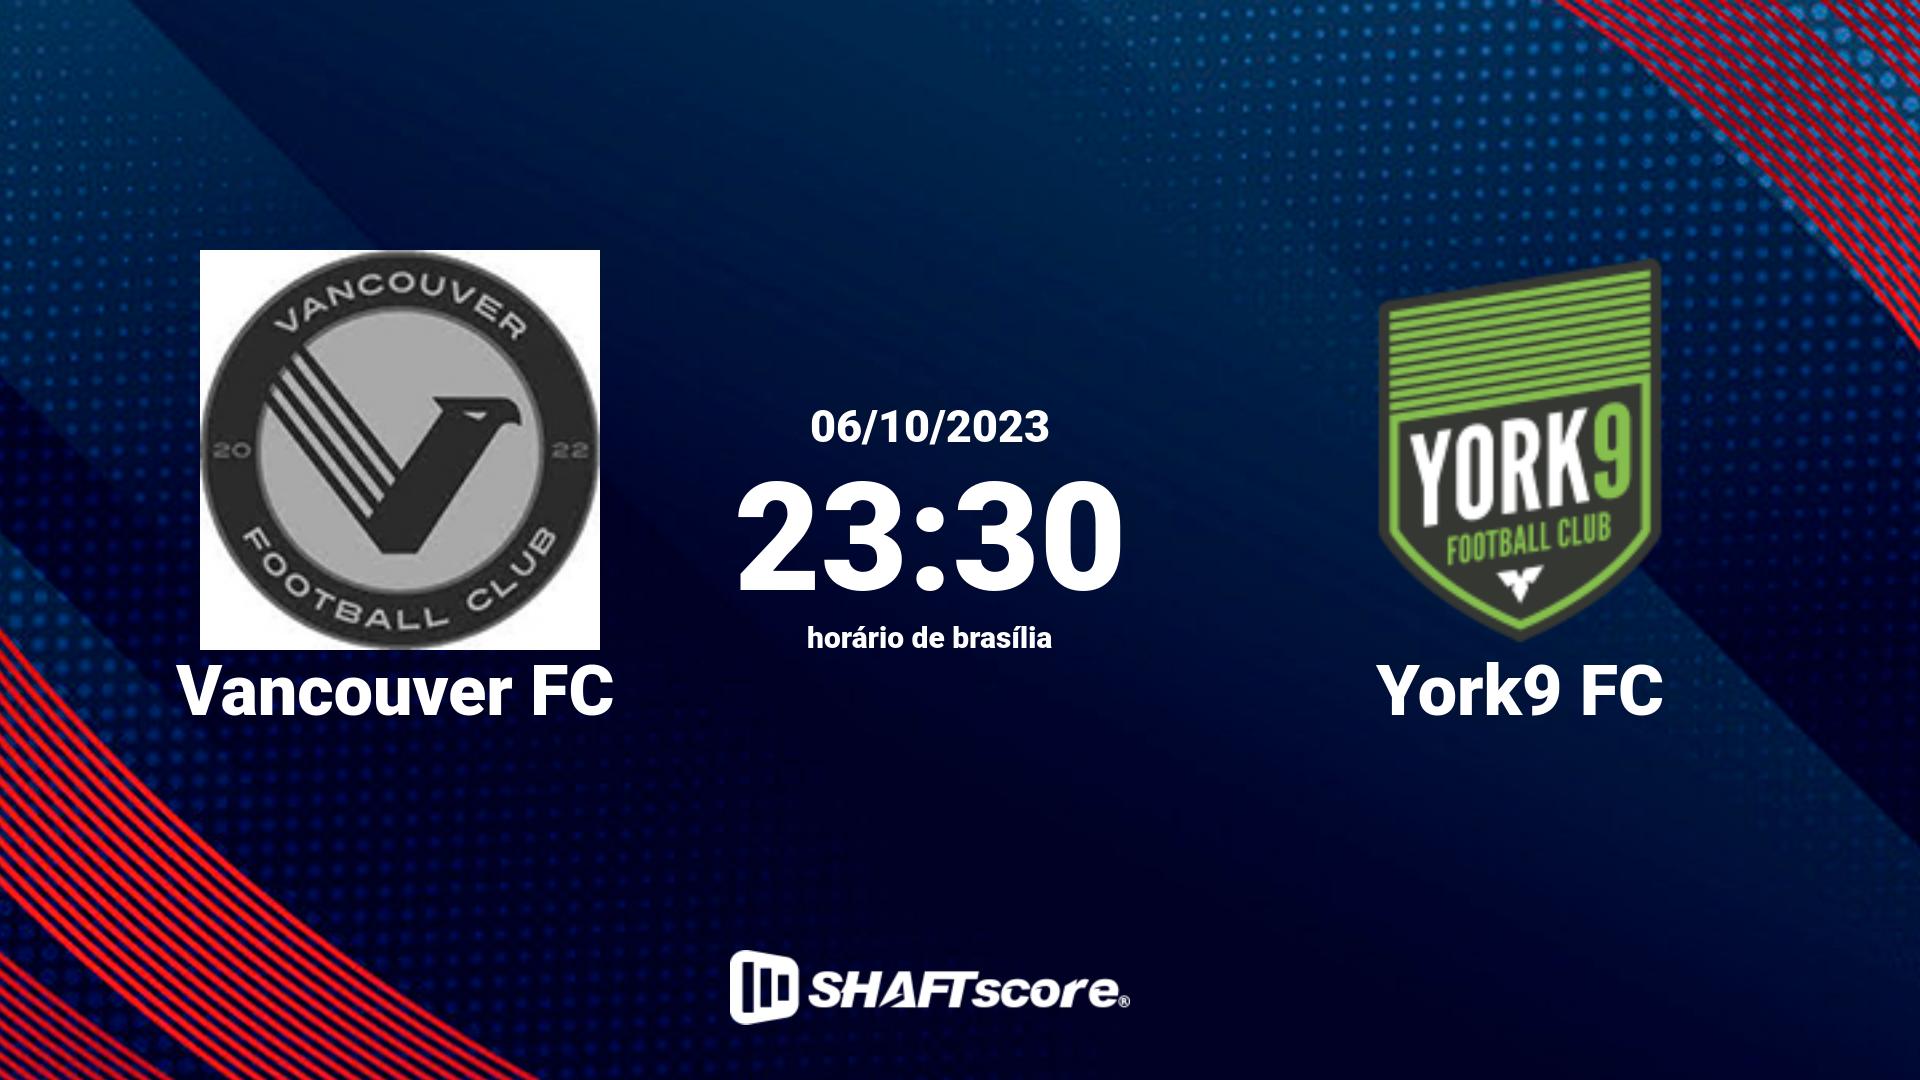 Estatísticas do jogo Vancouver FC vs York9 FC 06.10 23:30